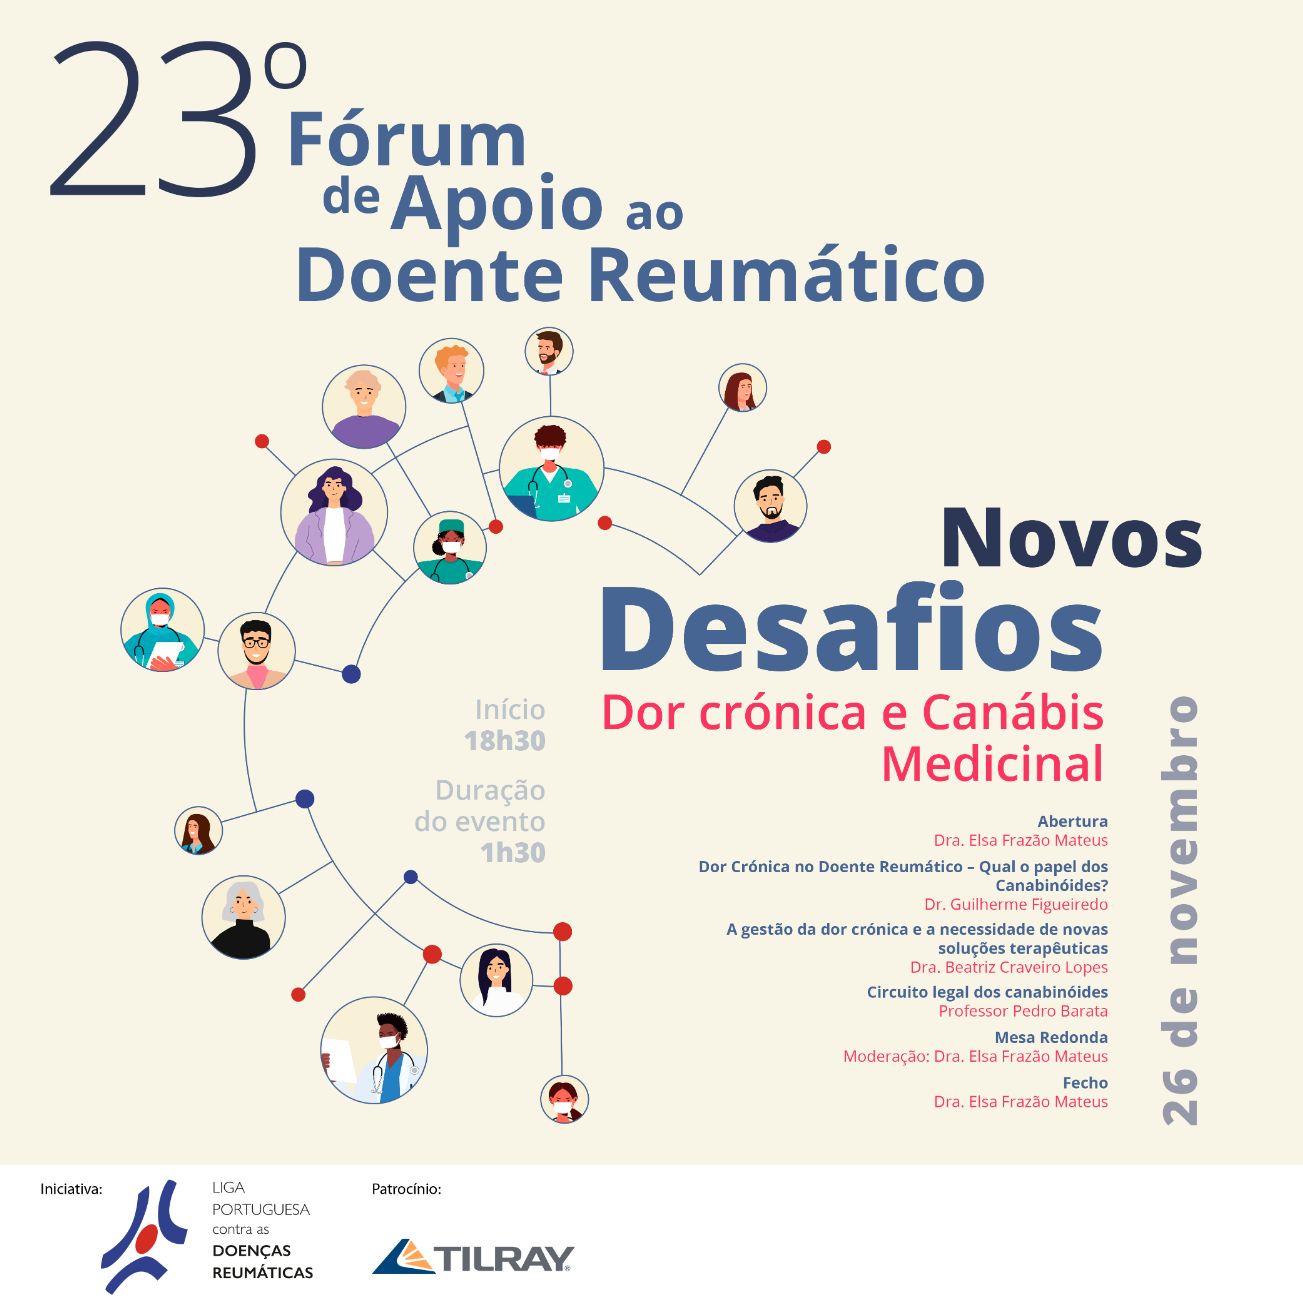 Fórum para doentes reumáticos aborda temática da canábis medicinal